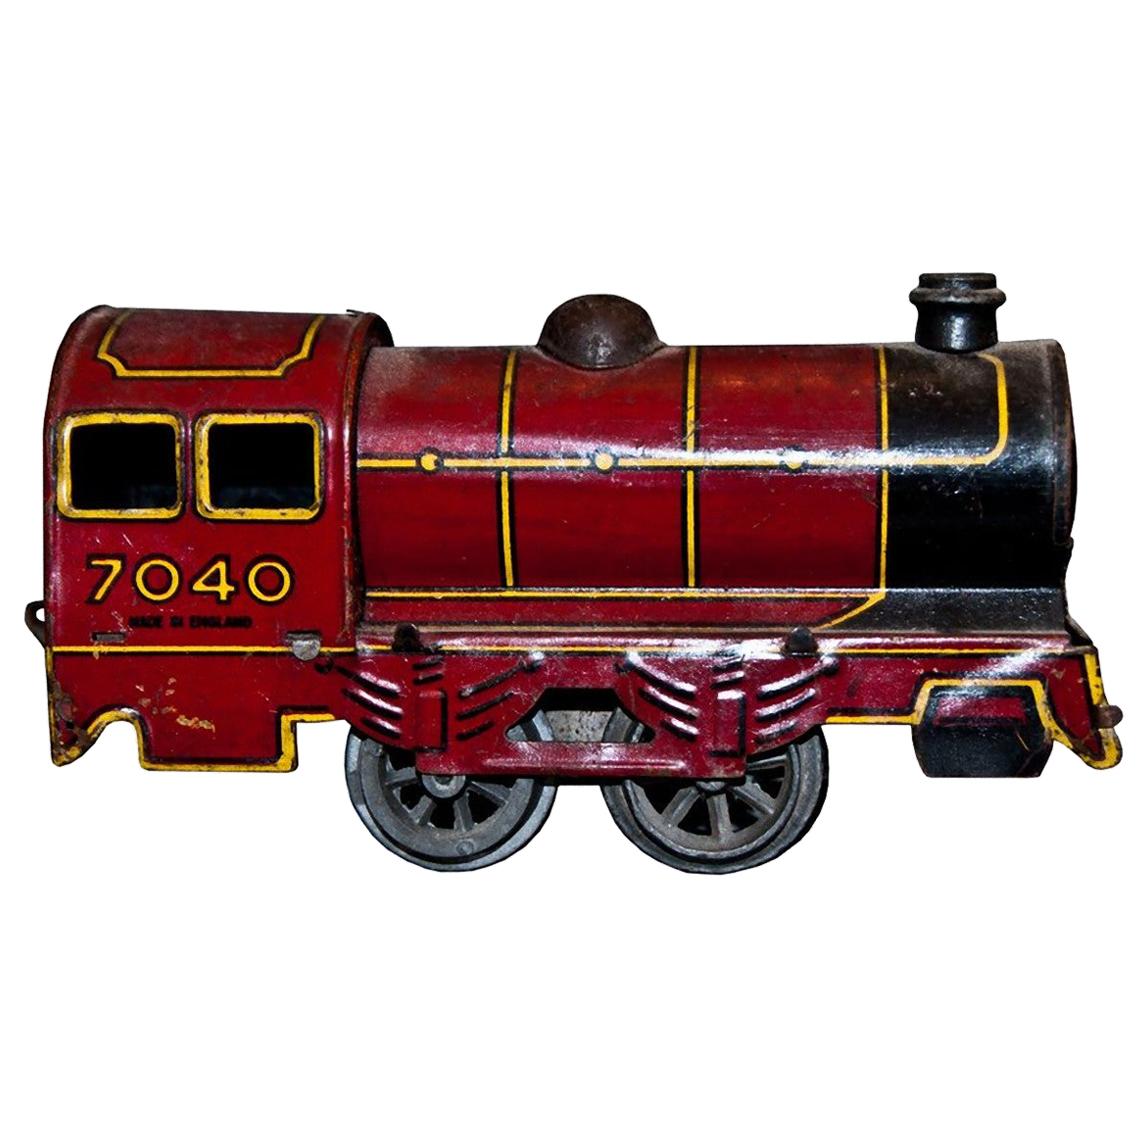 Vintage Toy, Wind up Locomotive Wells-Brimtoy 7040, by Wells-Brimtoy, 1930s